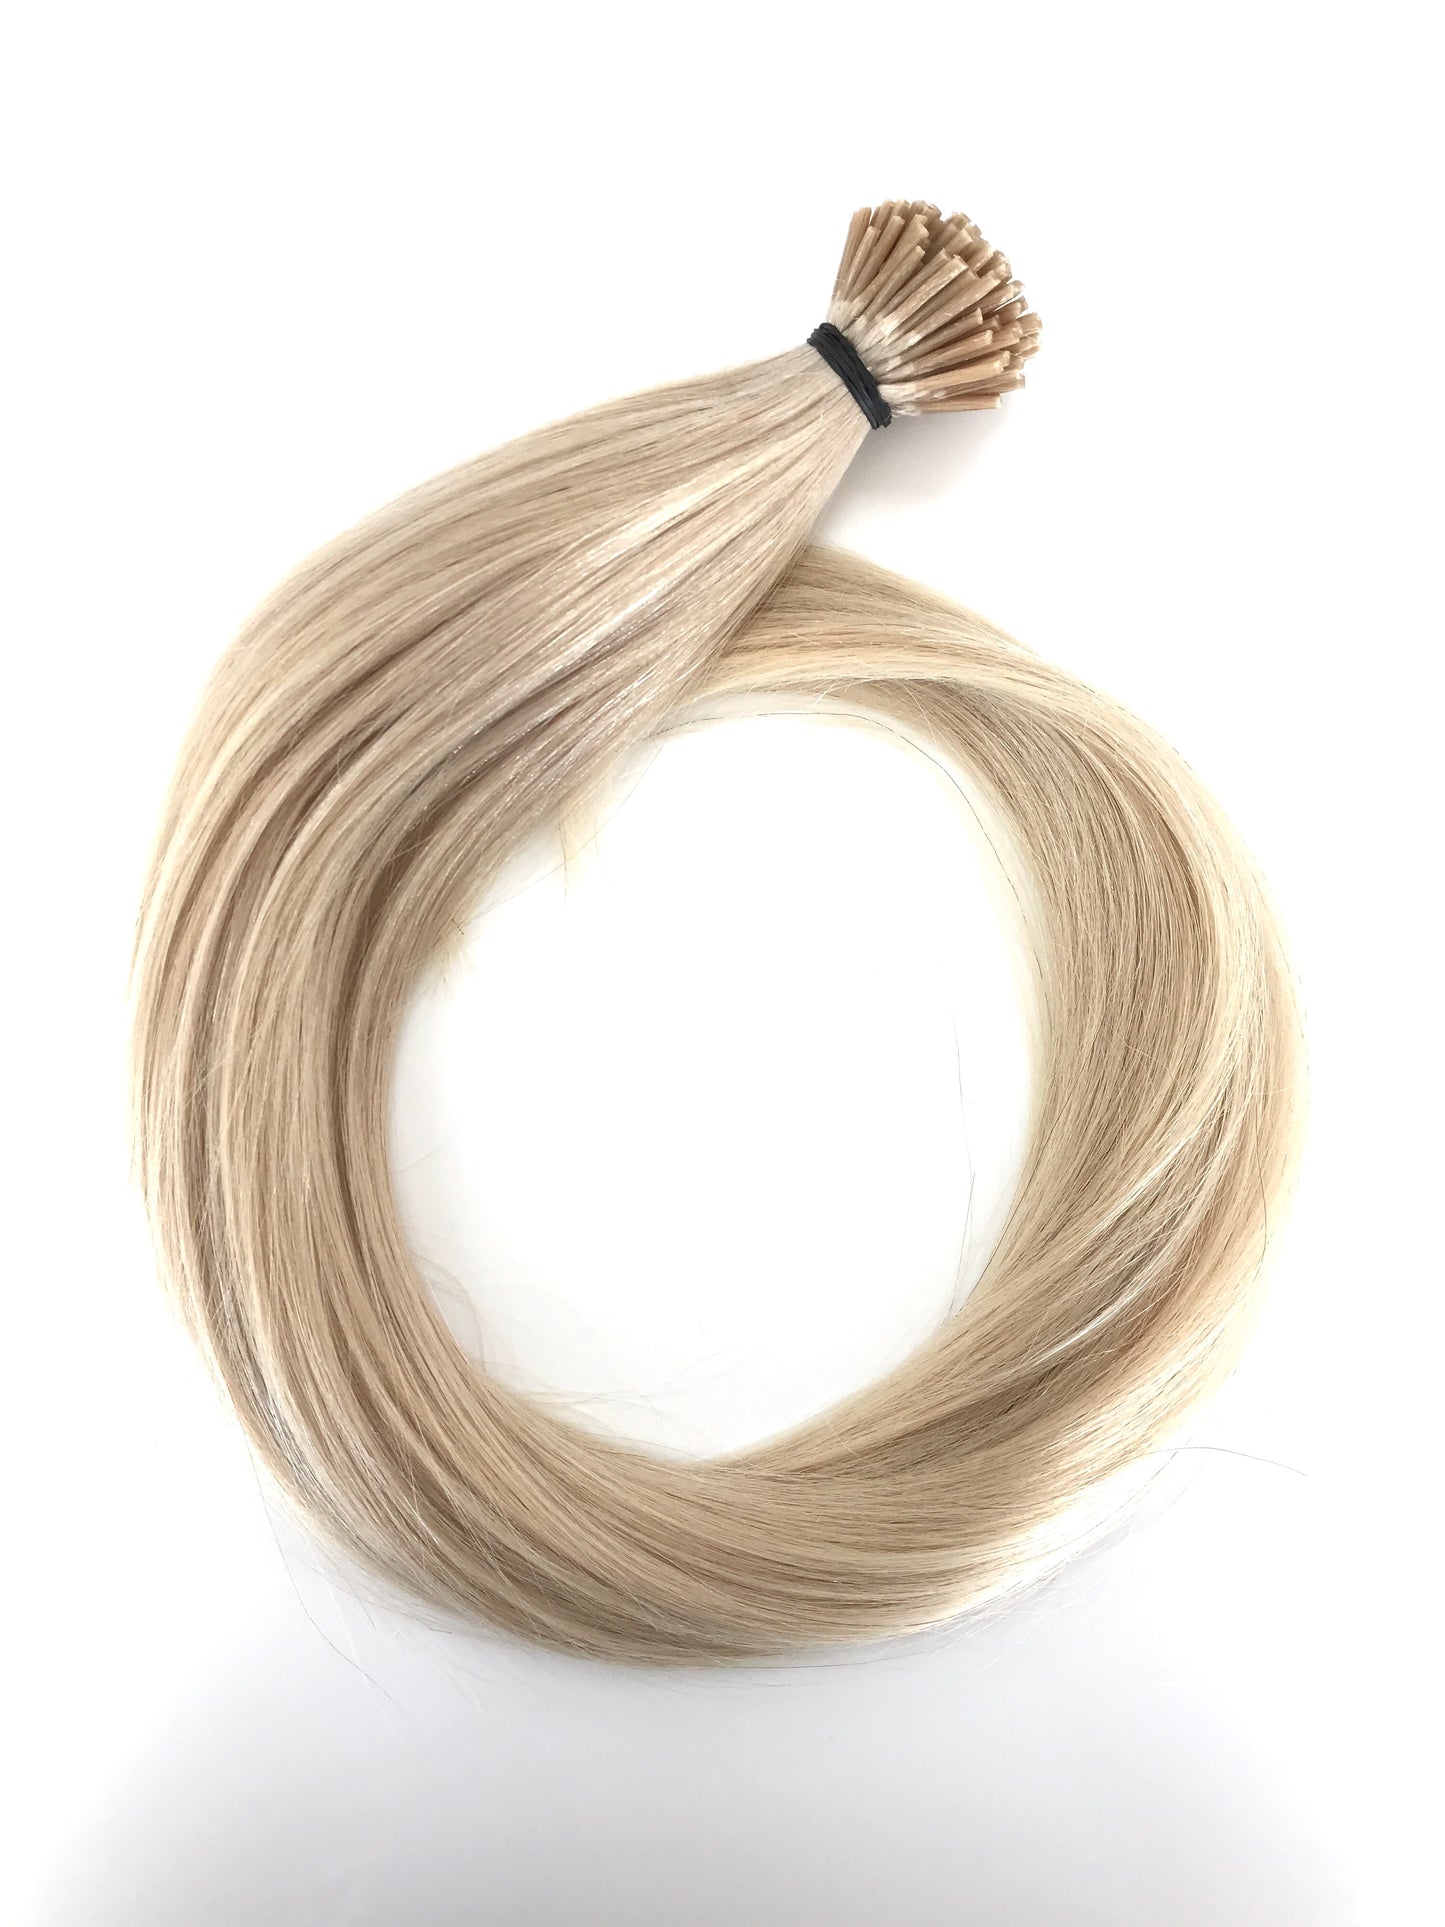 وصلات شعر بشري لعذراء روسية، حلقات صغيرة بحجم 0.7 جرام من i-Tip، شعر وجمال عذراء، أفضل وصلات شعر، شعر بشري لعذراء حقيقي.